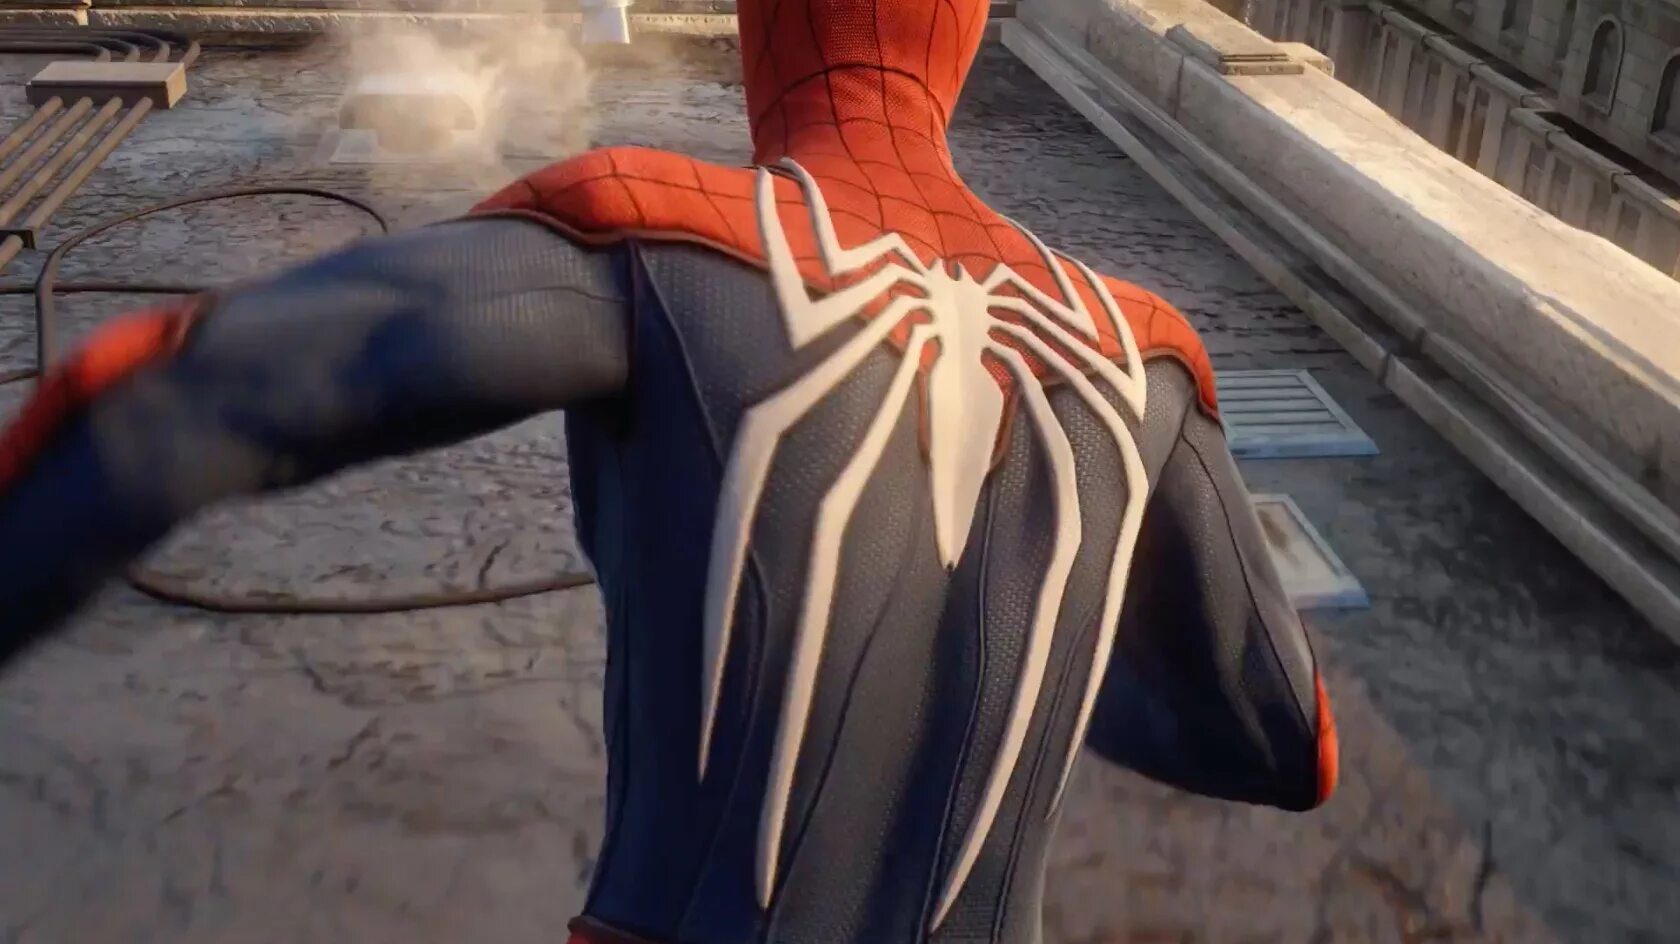 Spider man игра ps4. Человек паук ps4. Человек паук игра на пс4. Spider-man (игра, 2018). Расширенная версия человека паука